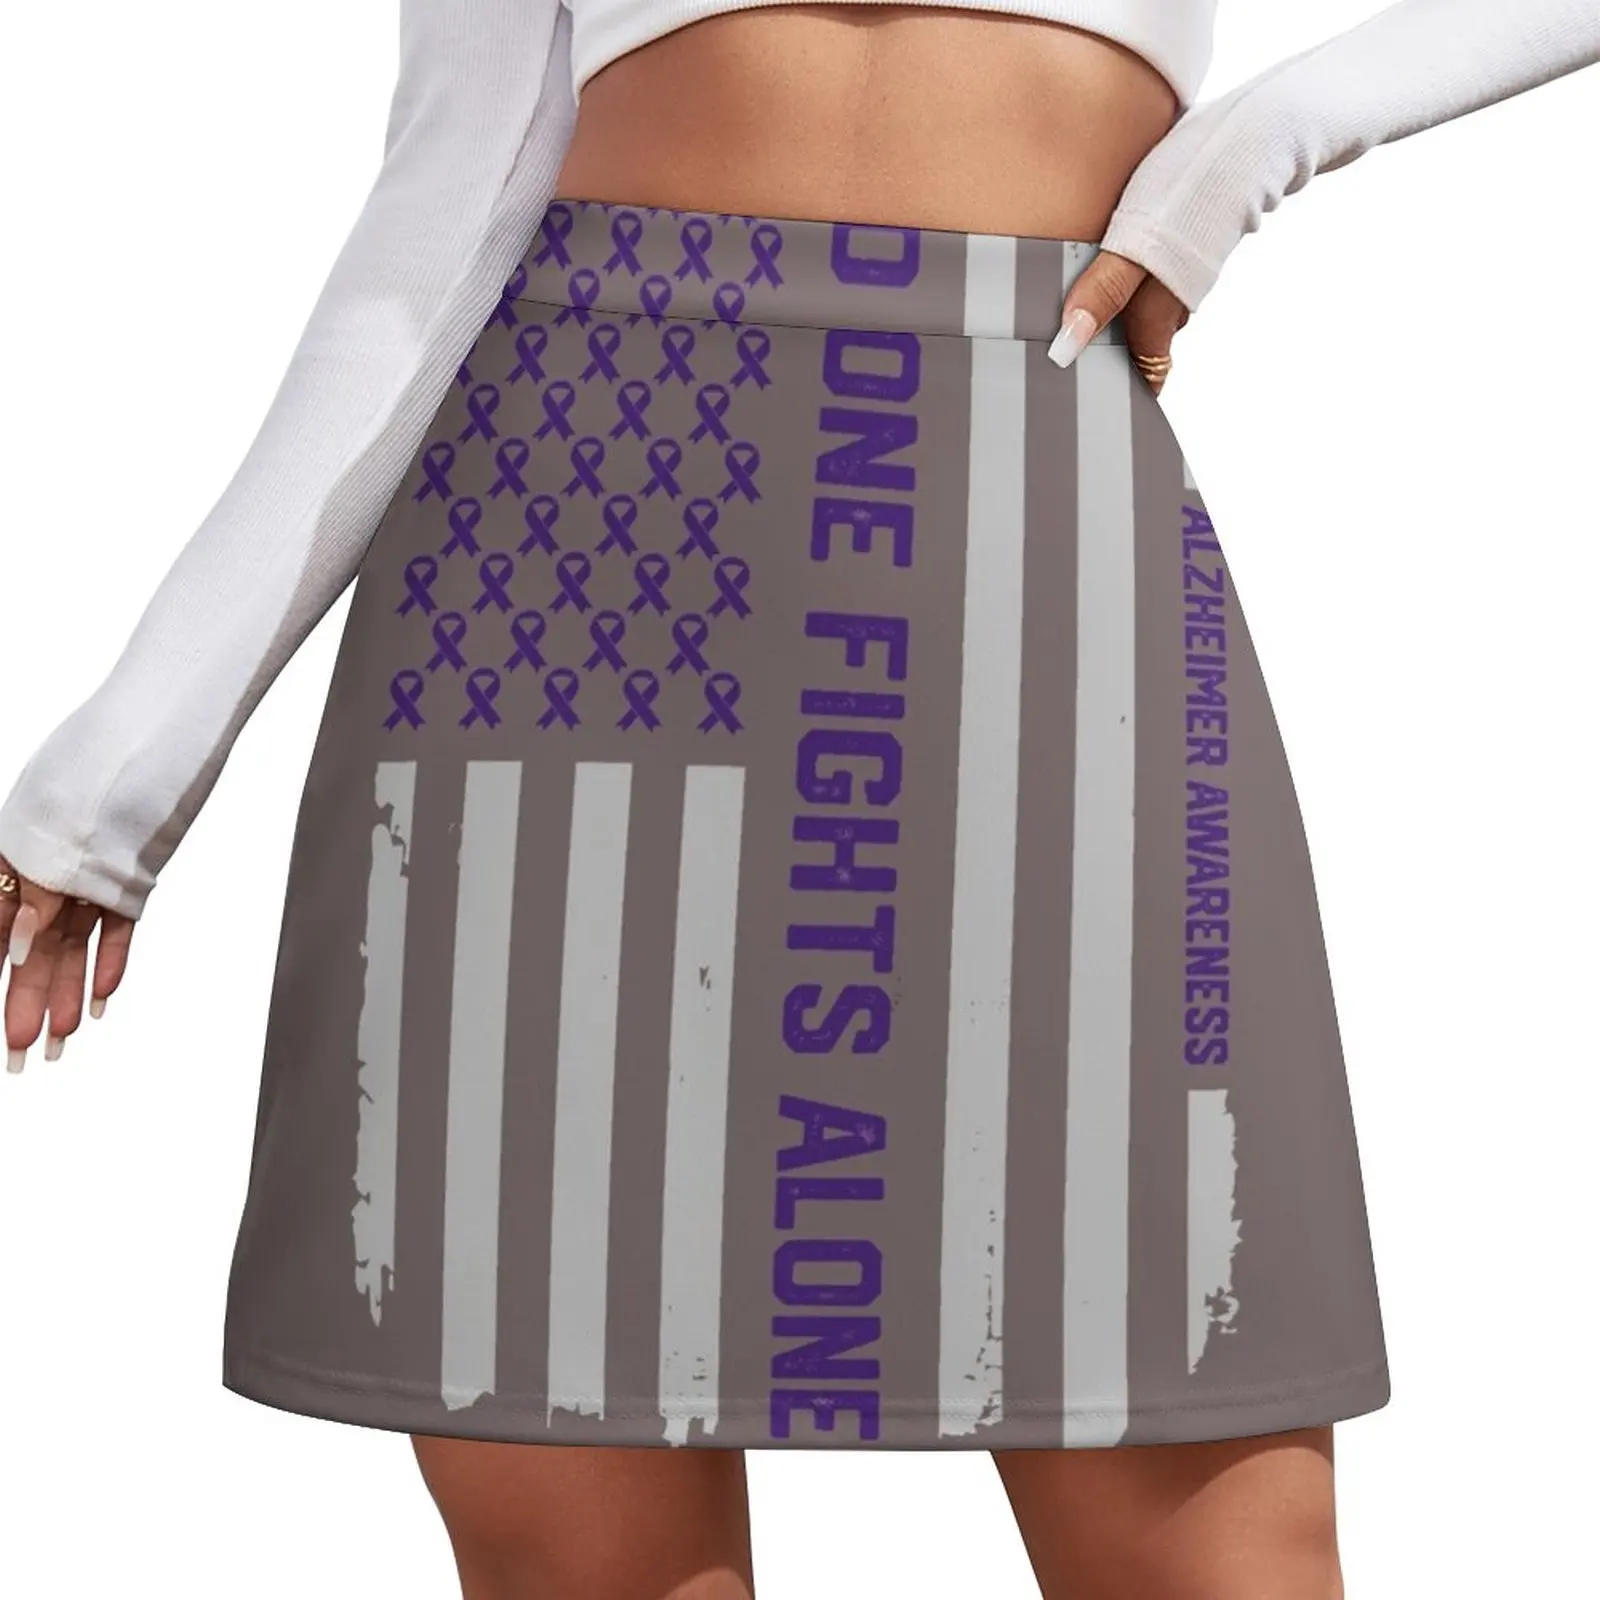 Alzheimer's Awareness Shirts - Alzheimers Awareness American Flag Mini Skirt shorts kawaii skirt bikini sets american flag halter bikini set in multicolor size s xl